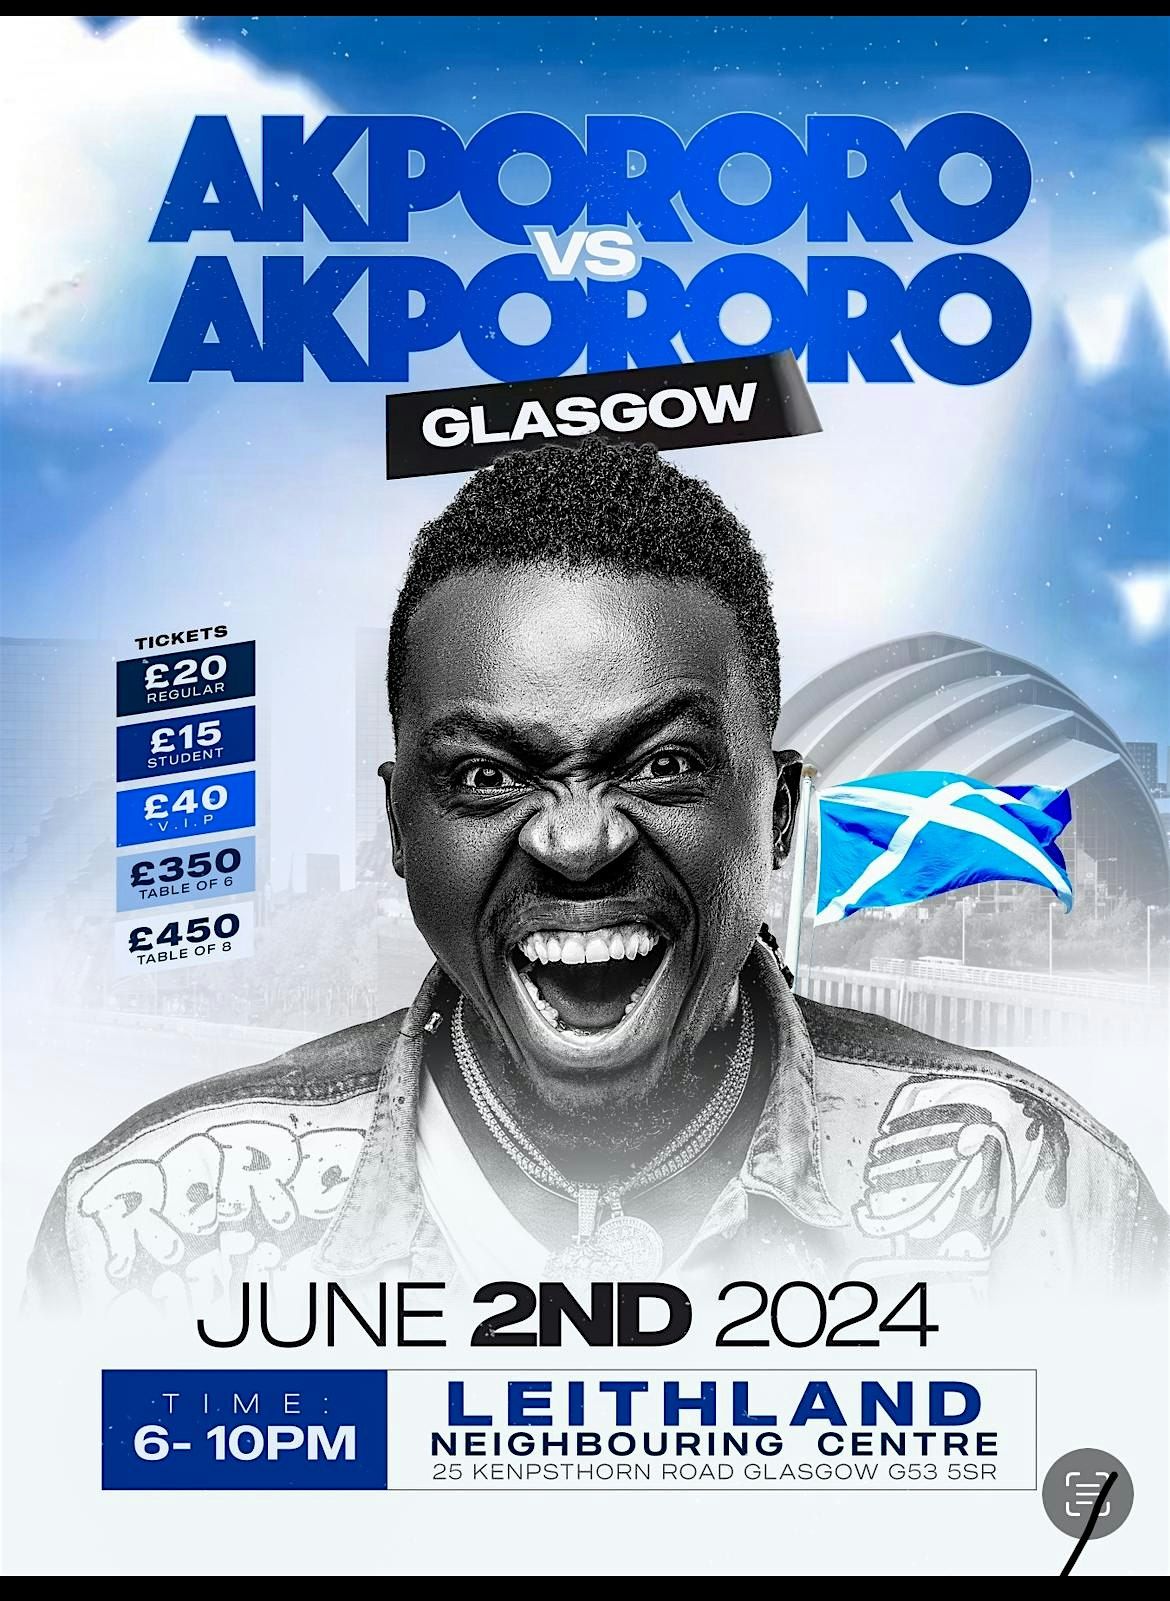 AKPORORO vs AKPORORO Live in GLASGOW, SCOTLAND Leithland